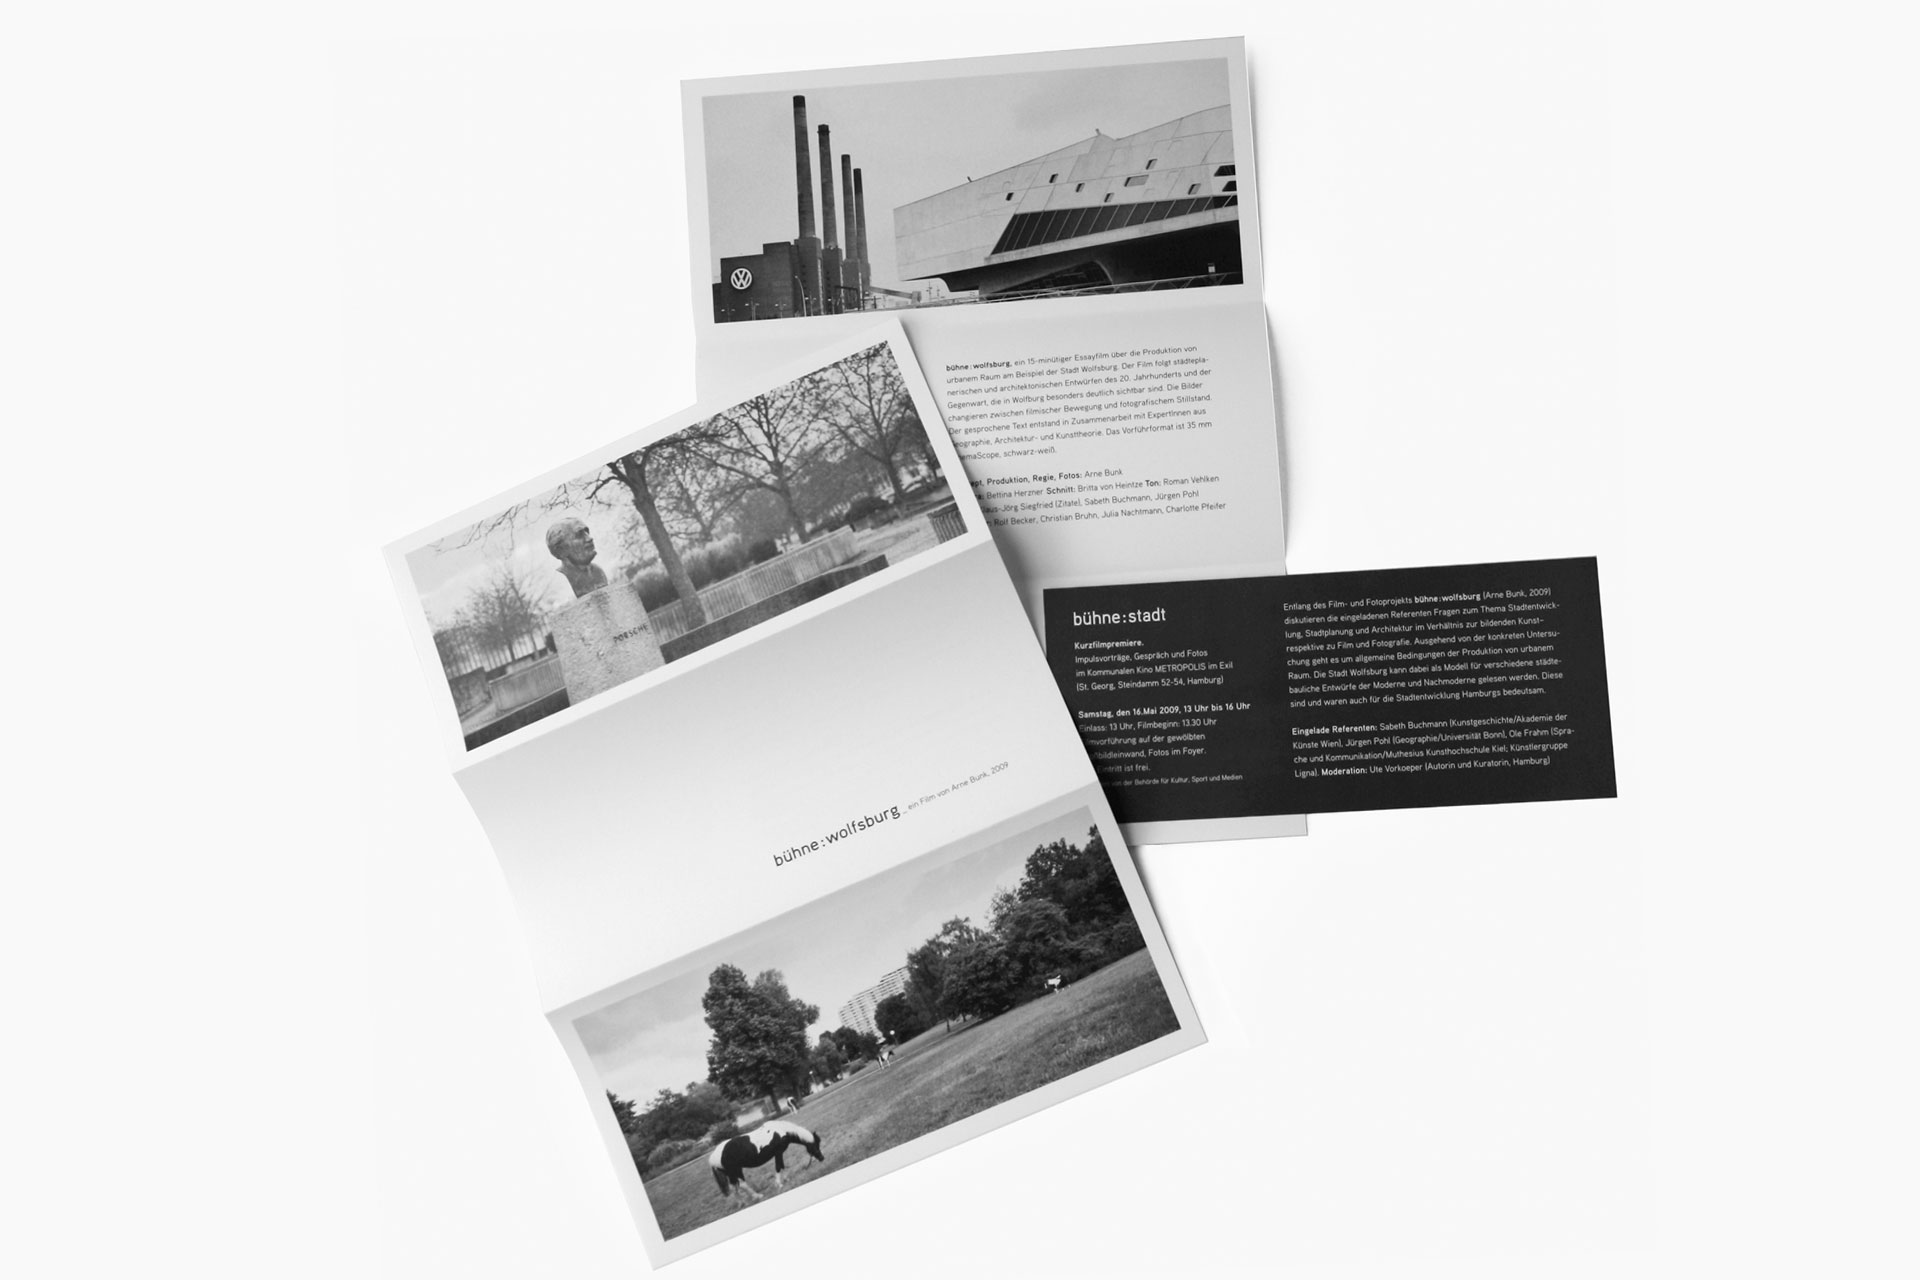 Foto des gestalteten Flyers mit schwarz-weiß-Fotos und der Einladungskarte  für das Projekt von Arne Bunk „bühne:stadt“